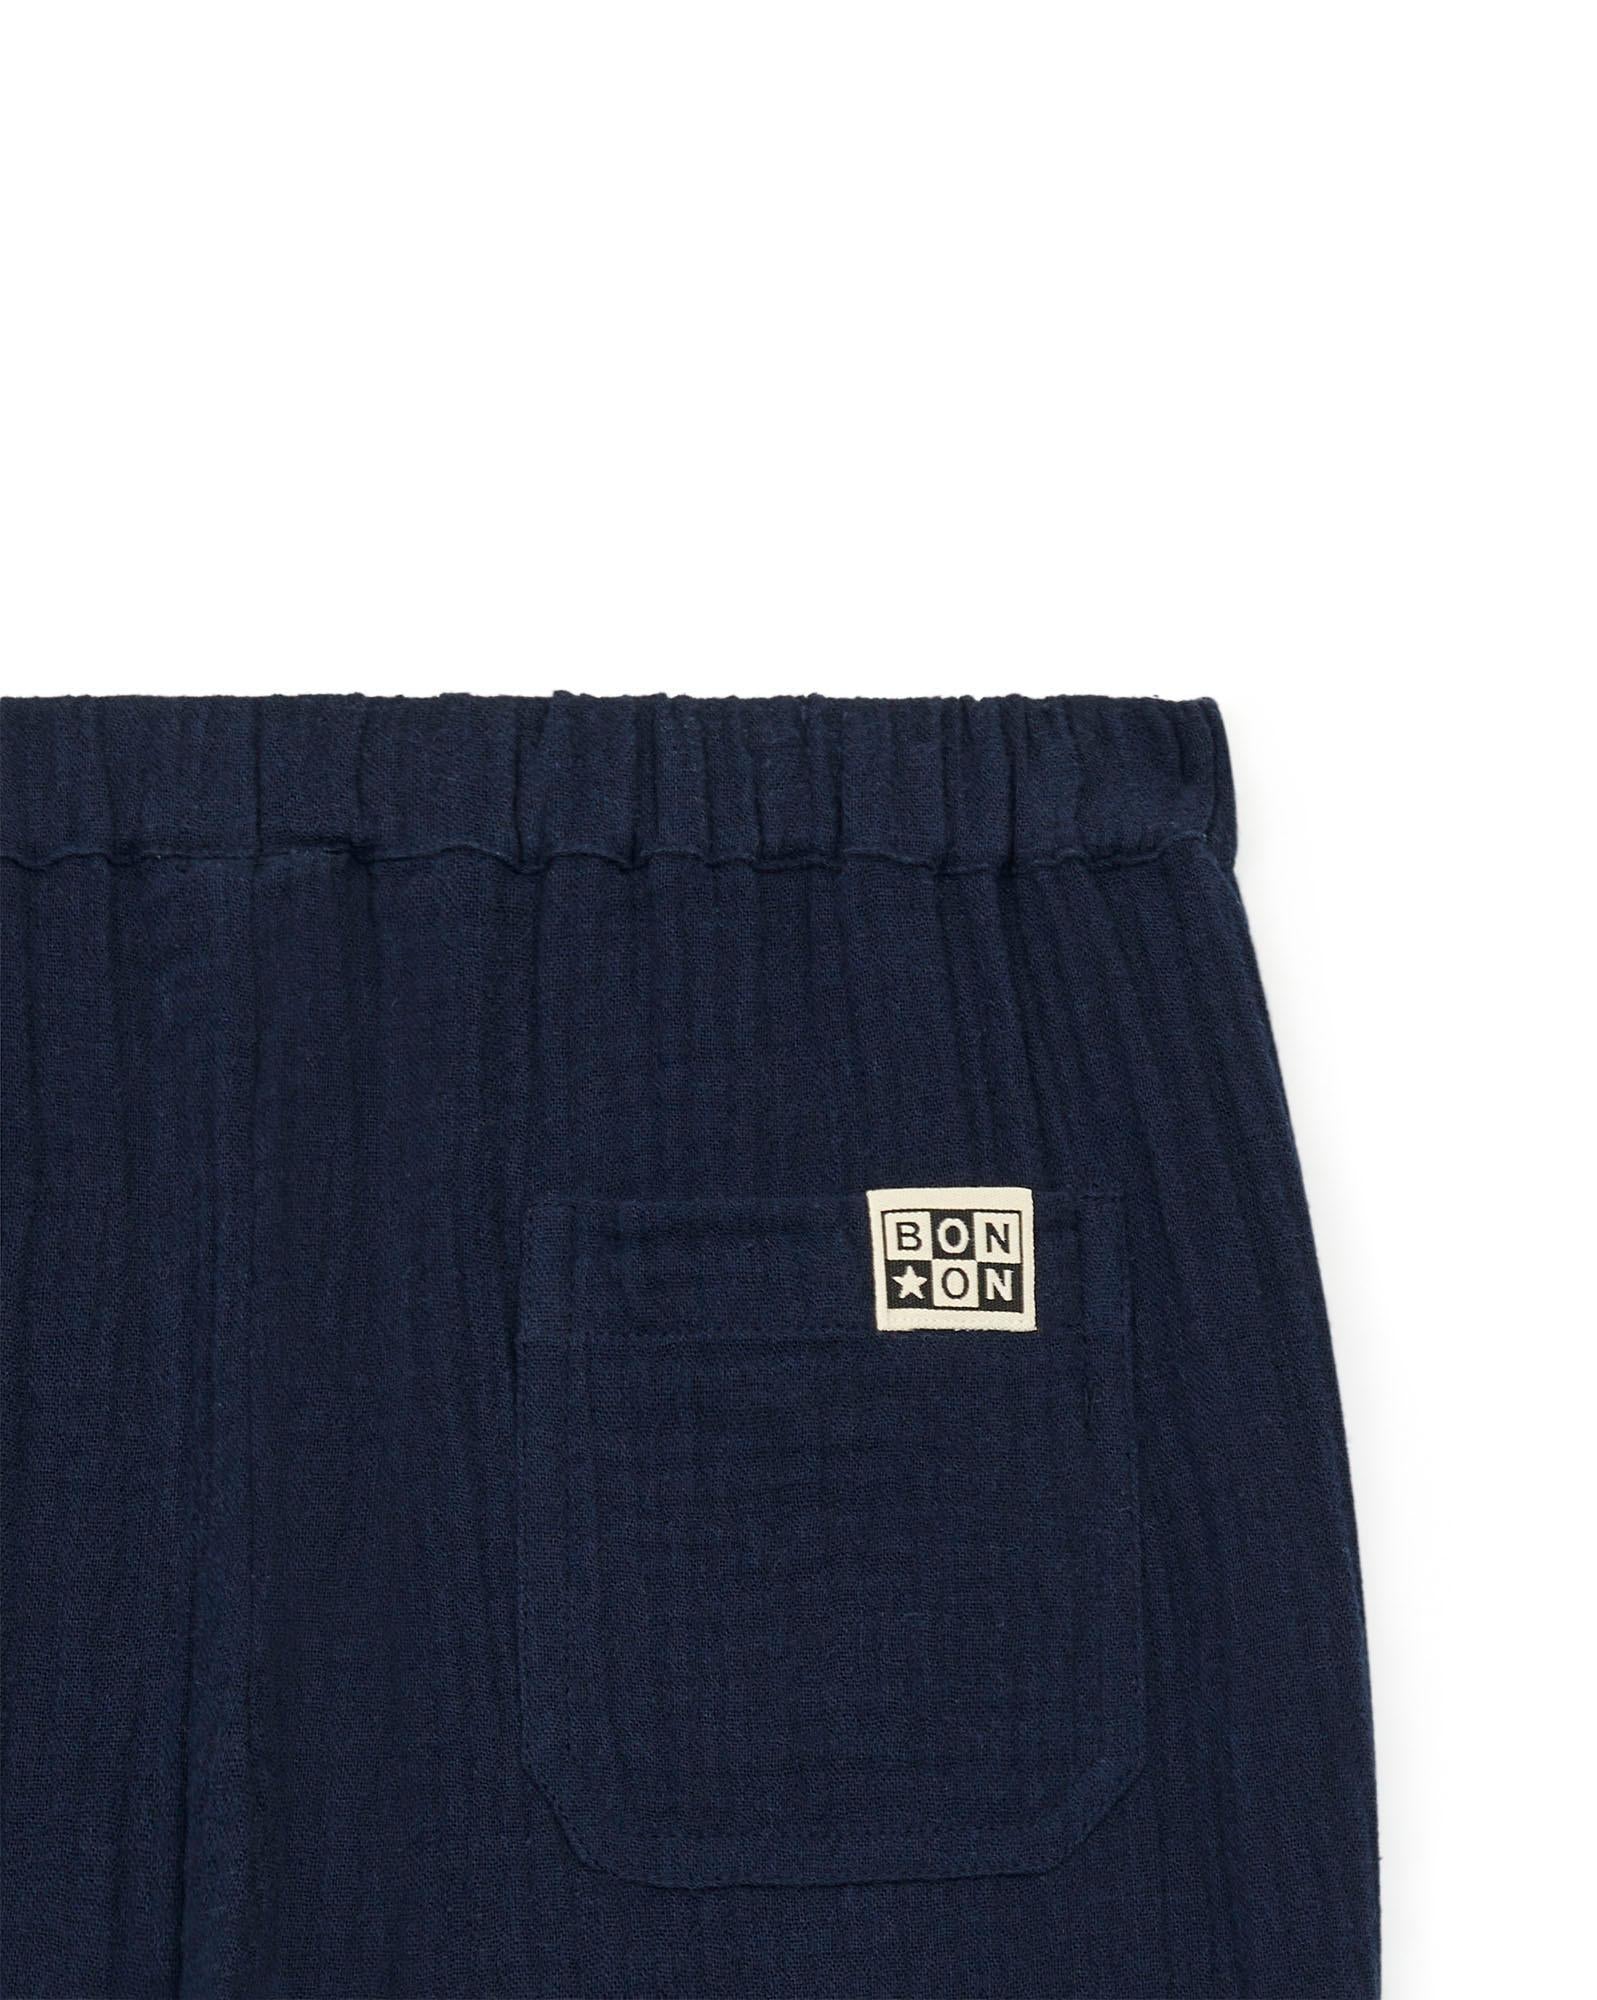 Pantalon Batcha bleu gaze de coton biologique certifié GOTS